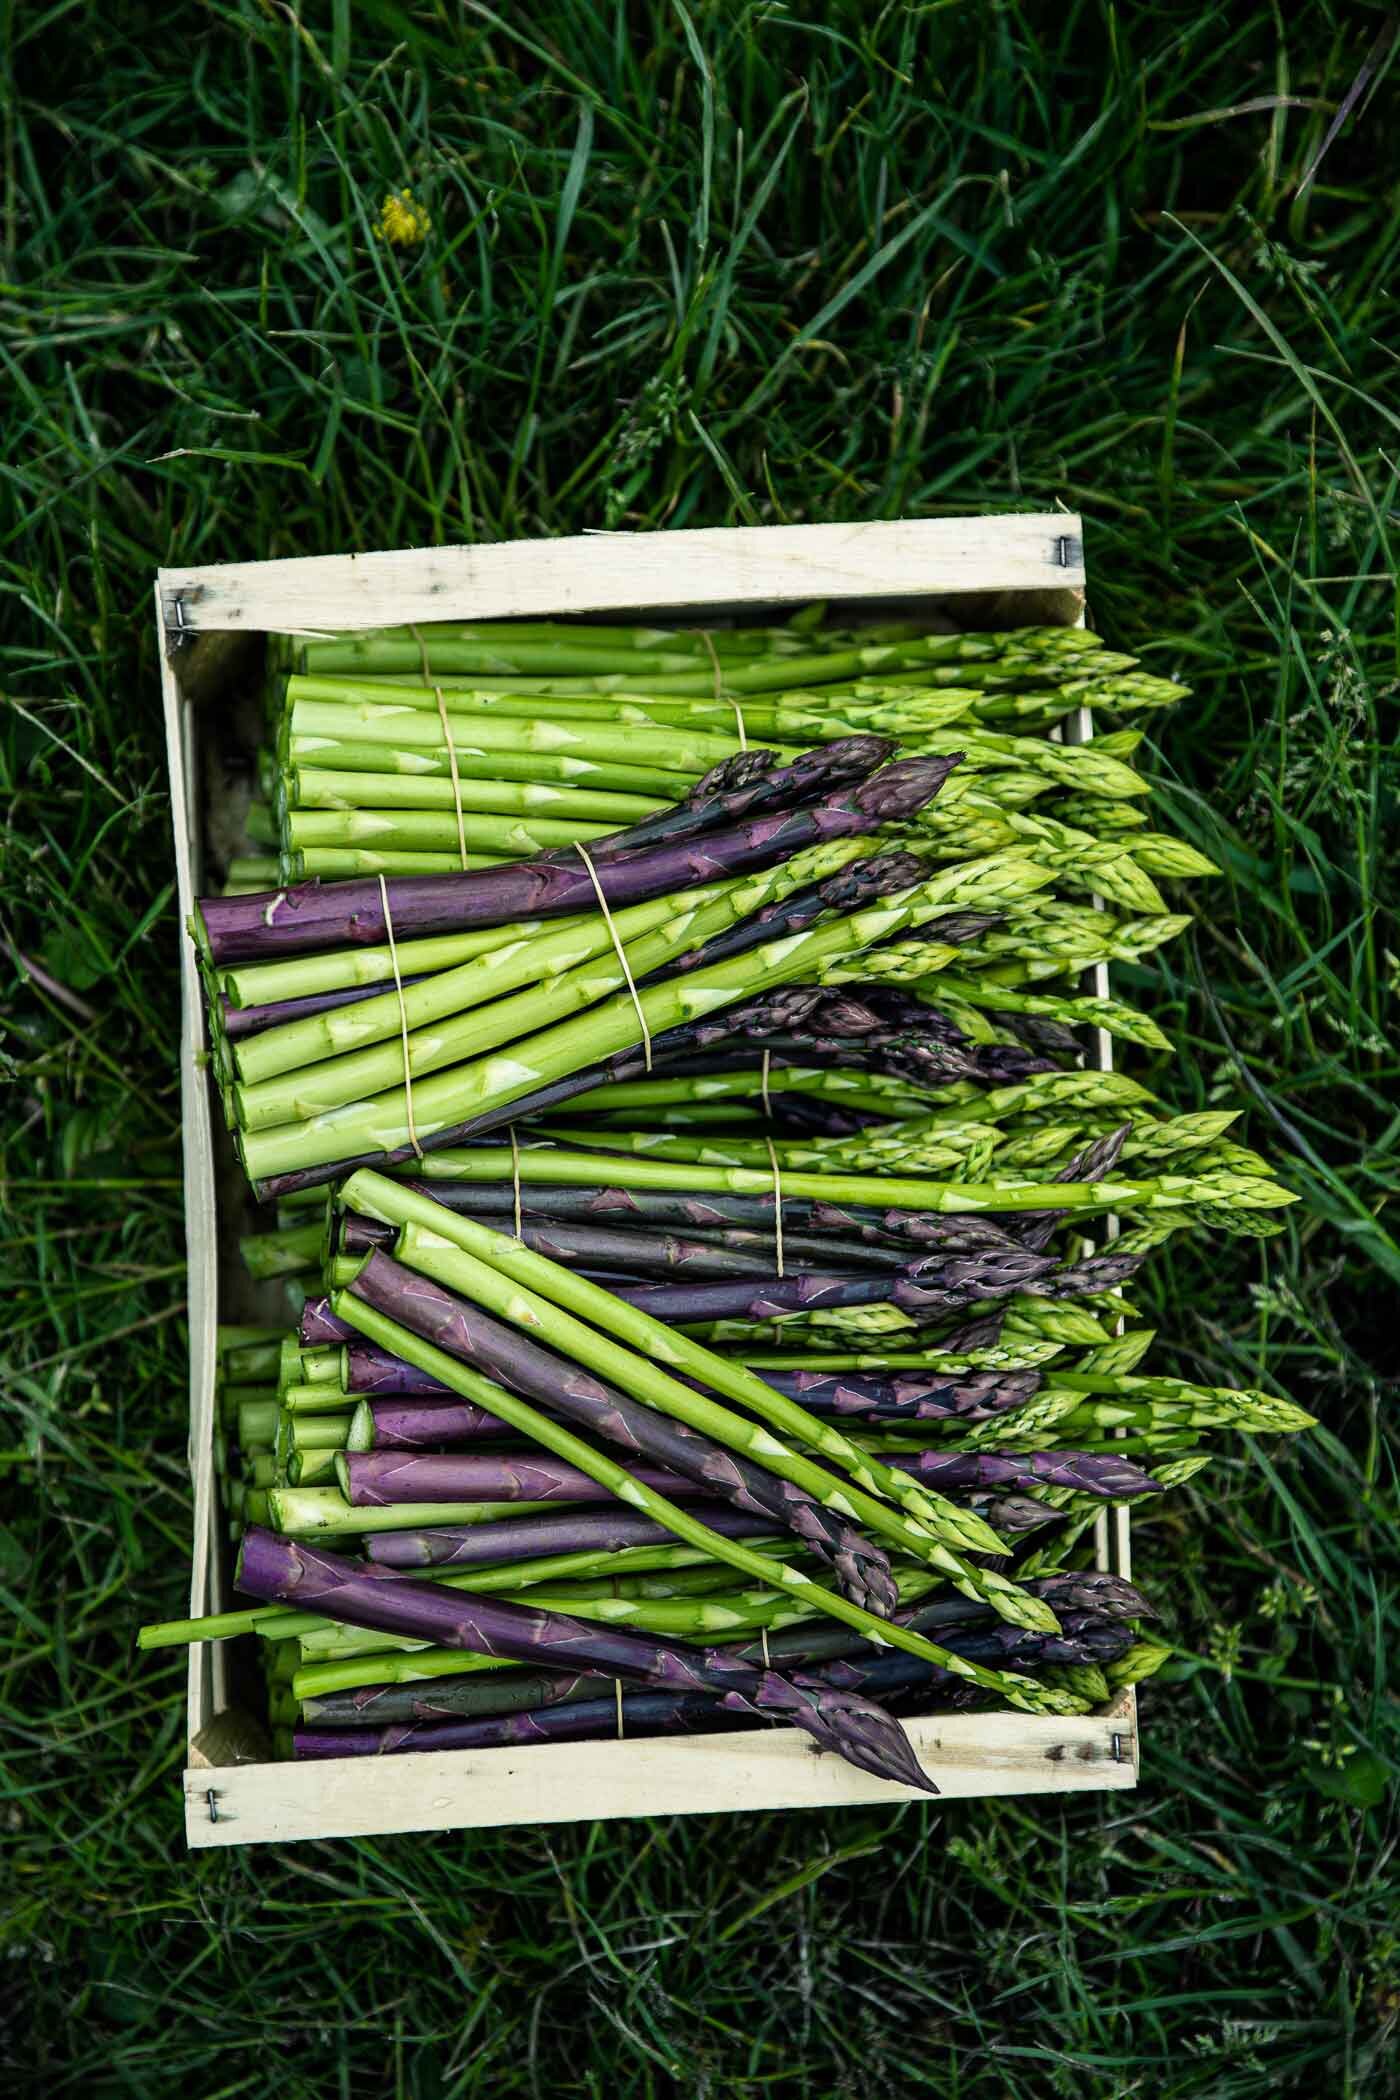 spargelernte-gruener-violetter-spargel-reportage-veggielicious-food-fotografie-133-dt-hoch.jpg